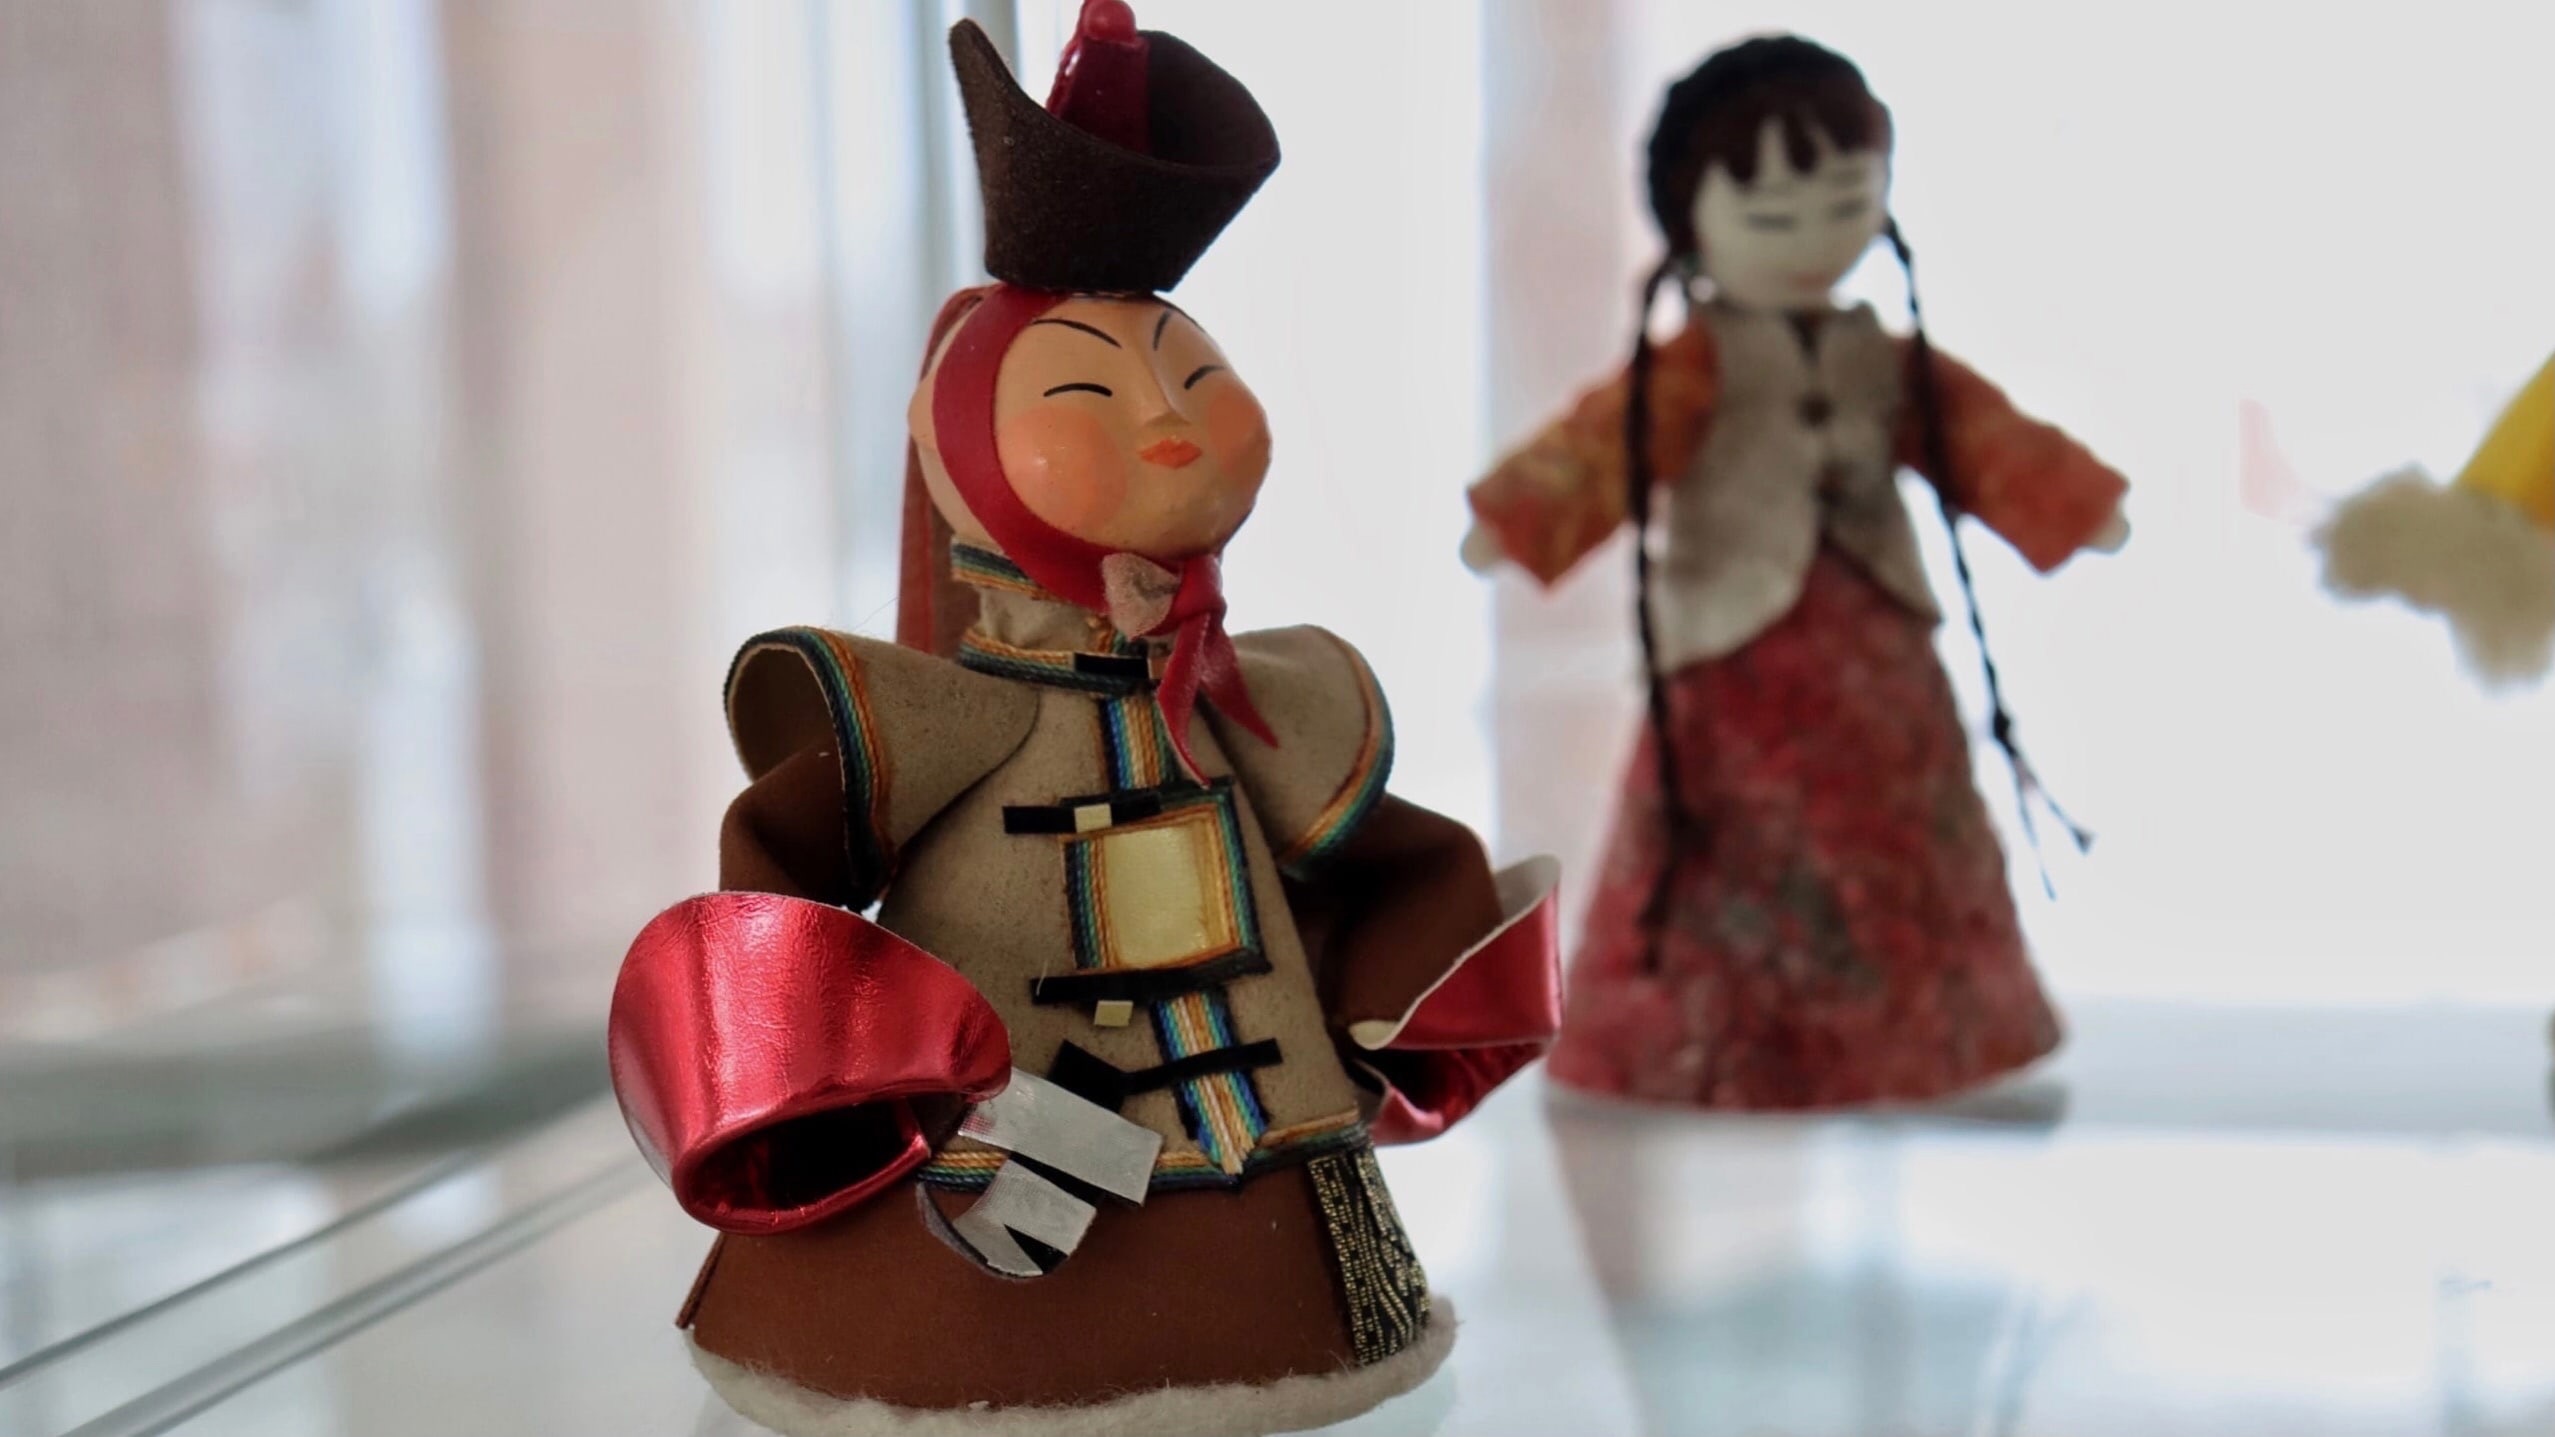 Выставка кукол в национальных костюмах "Творчество в единении" открылась в Ханты-Мансийске